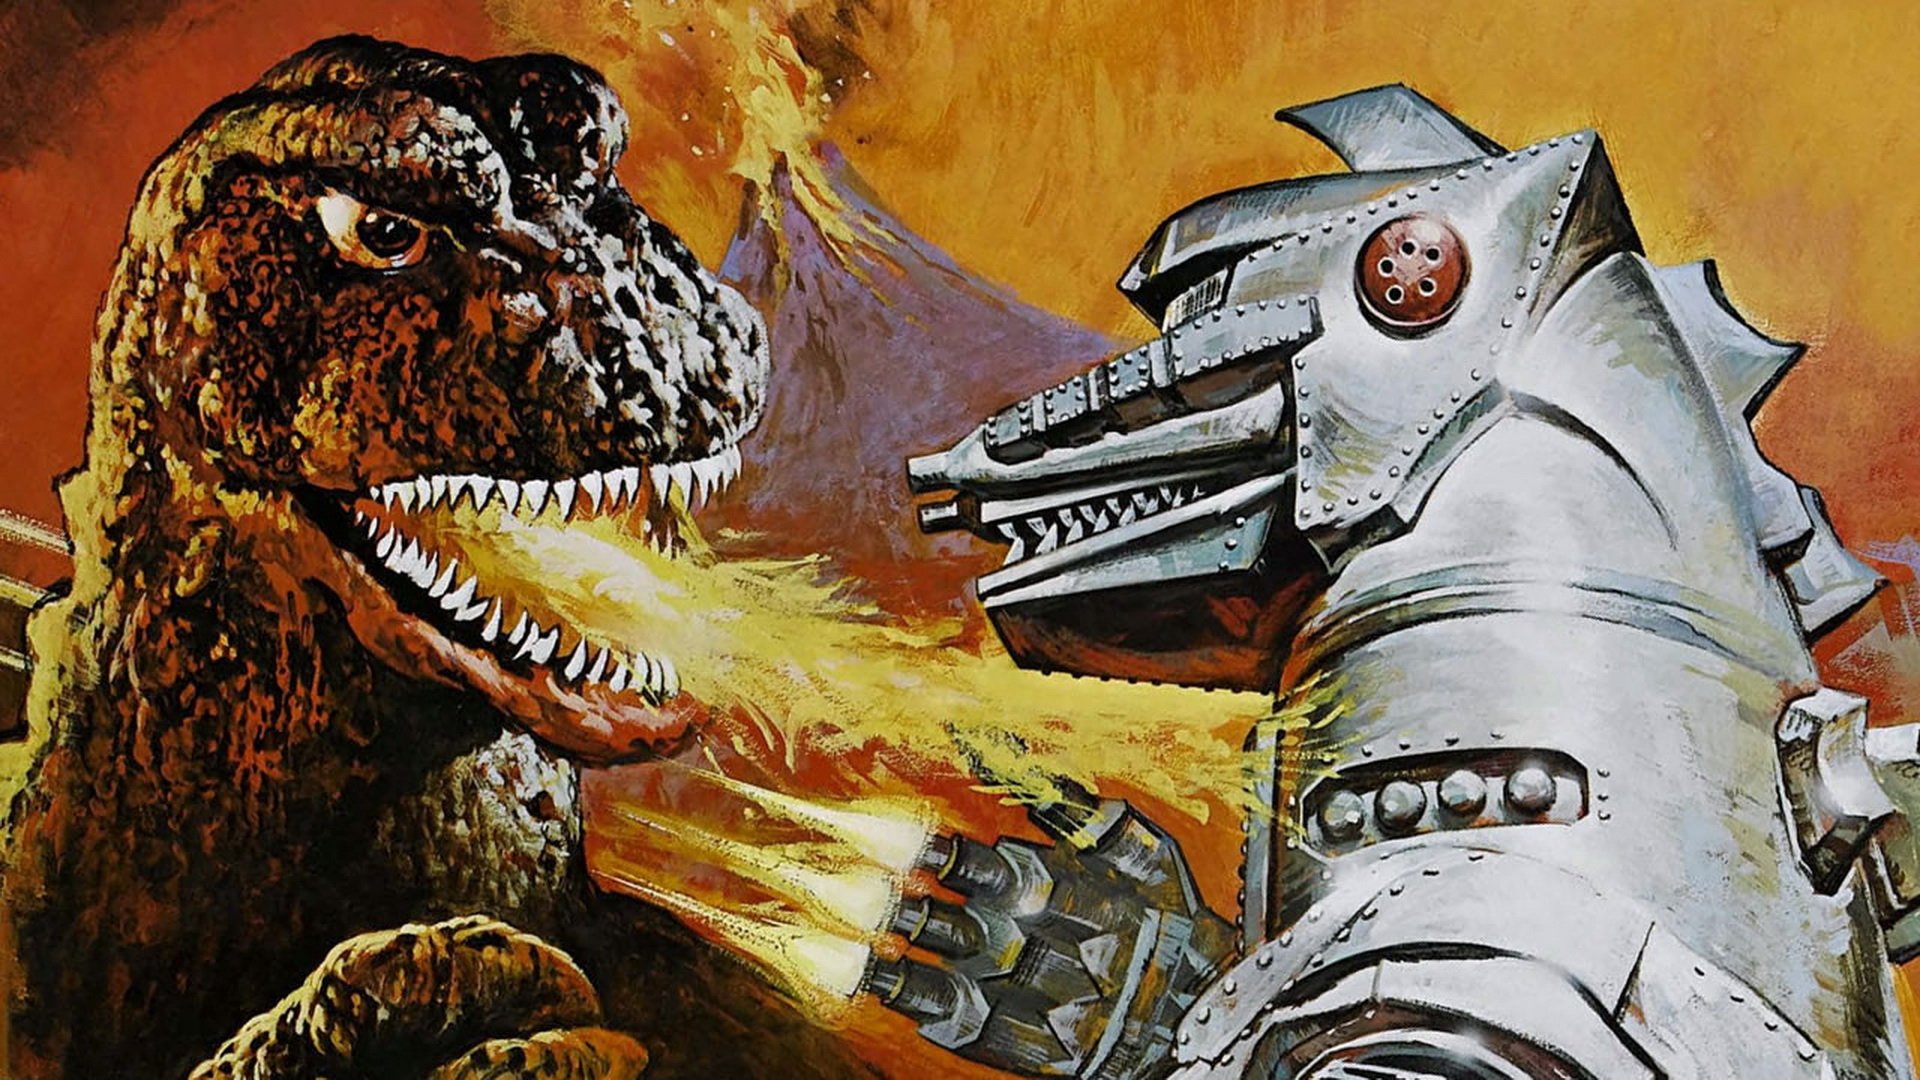 HQ Godzilla Vs. Mechagodzilla Wallpapers | File 426.56Kb